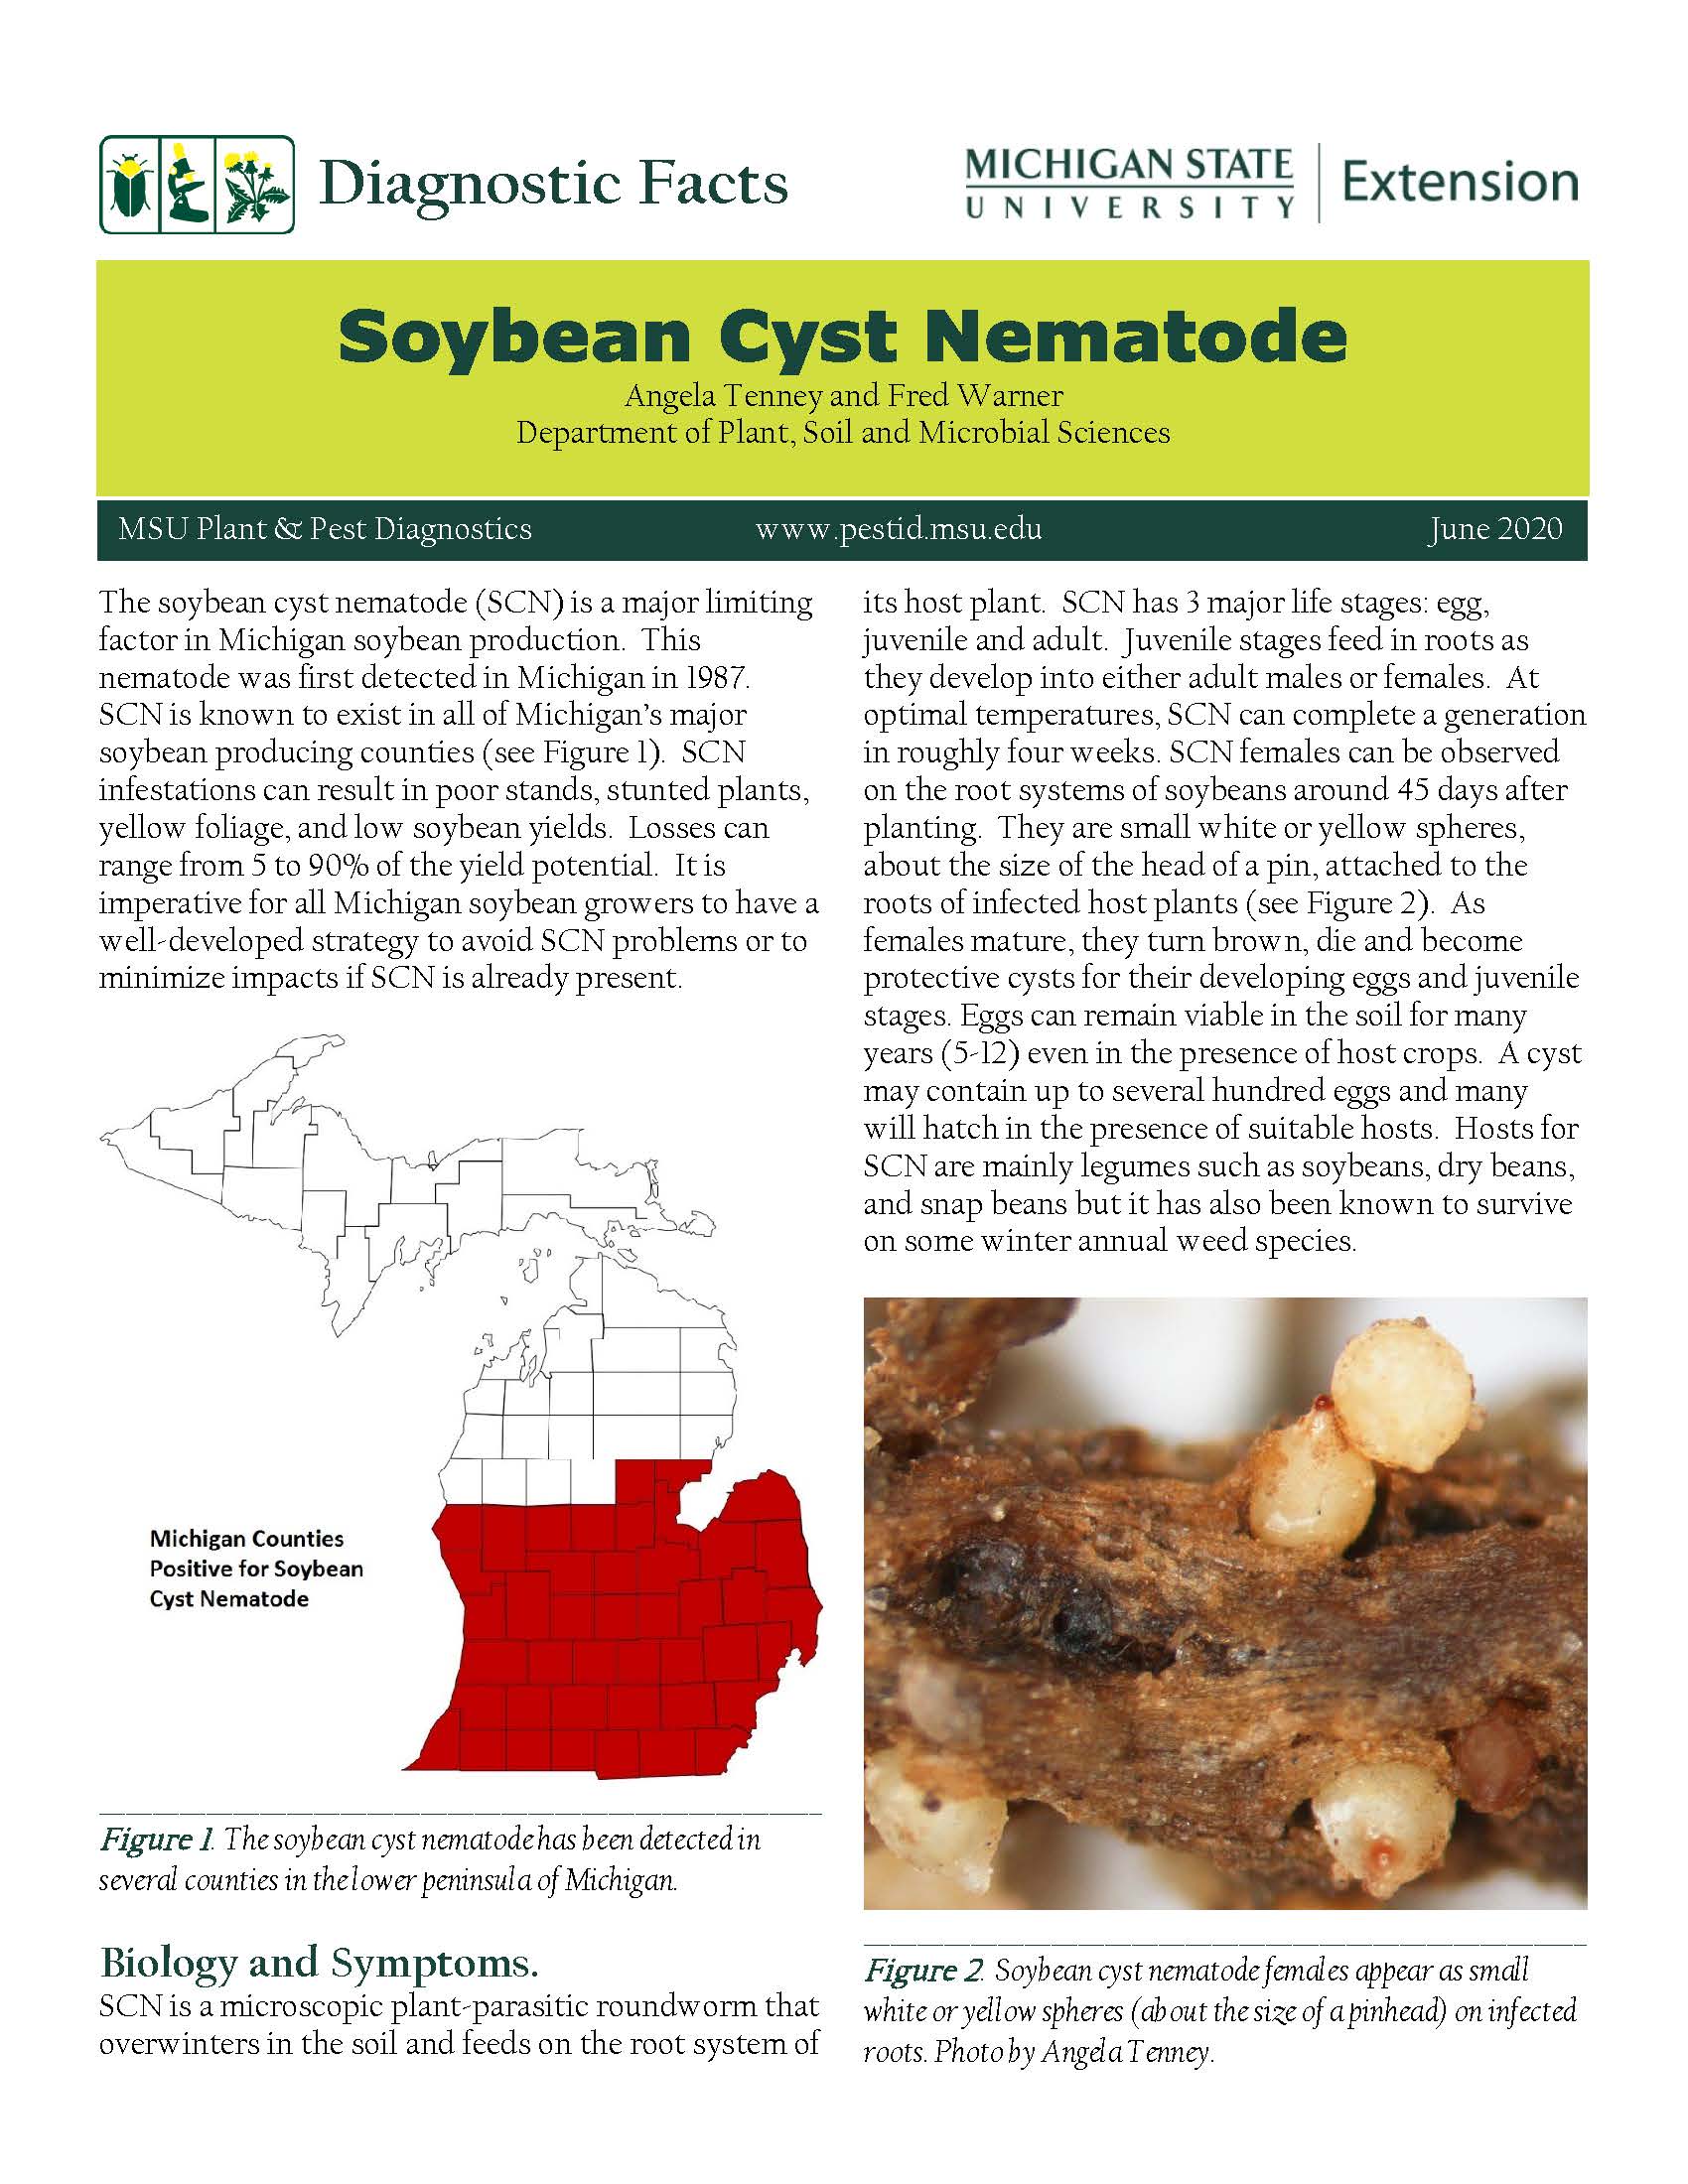 Nematodes on soybean